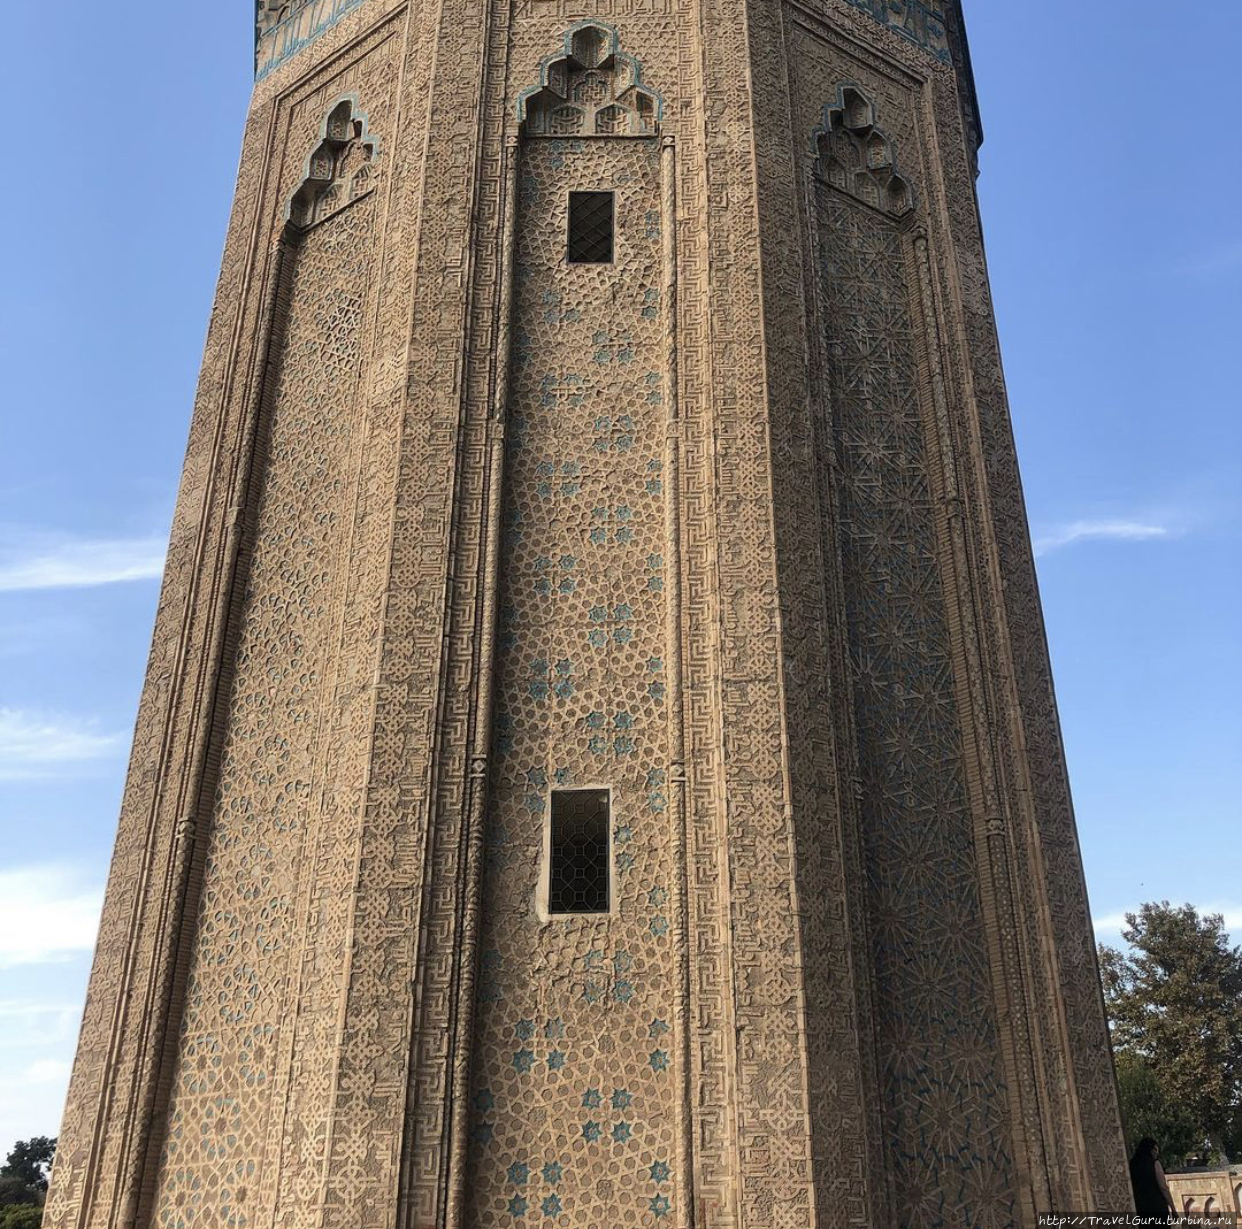 Мавзолей Момине-хатун Нахичевань, Азербайджан